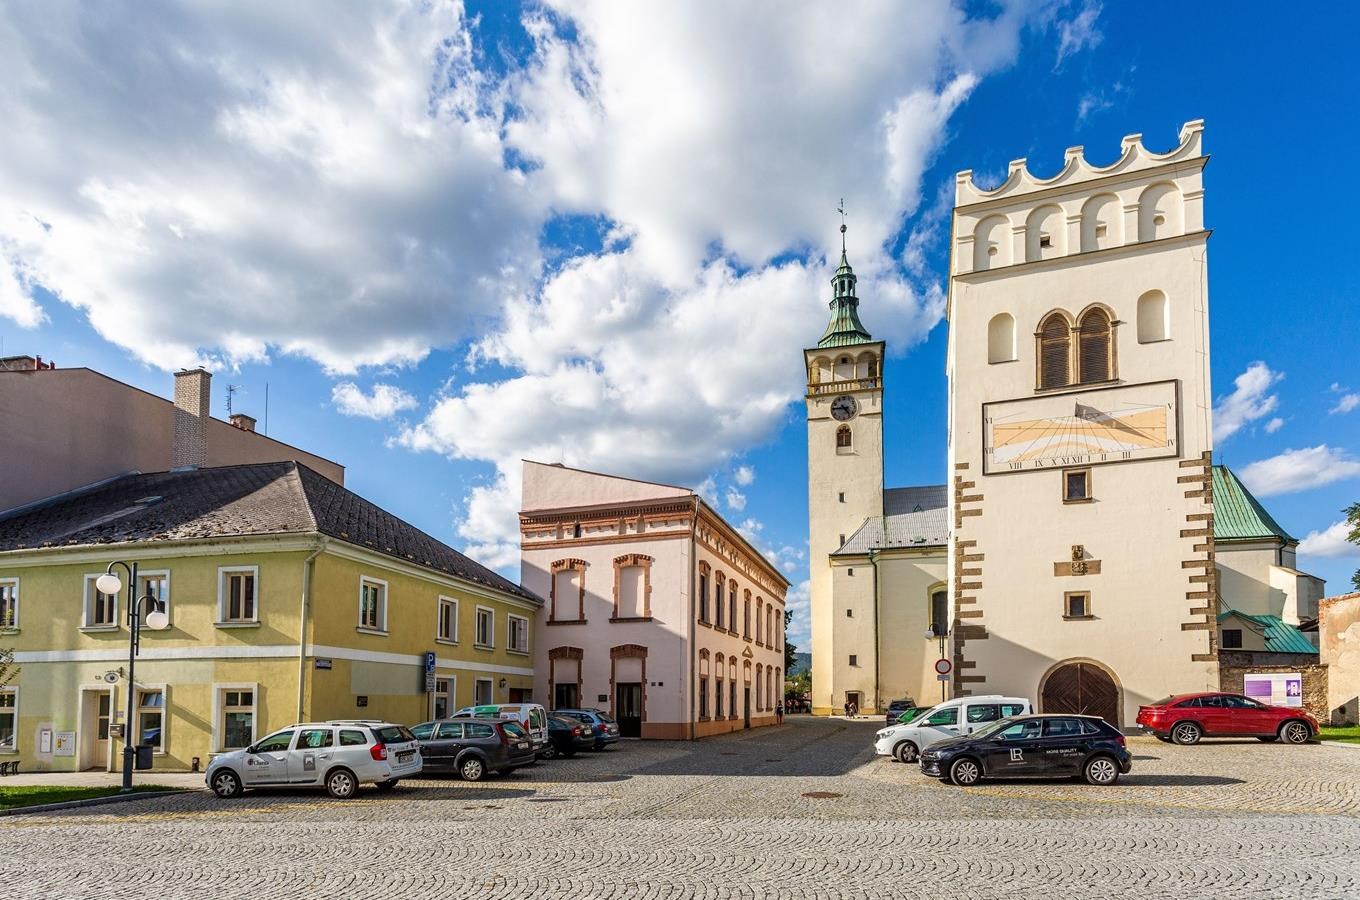 Bezplatné komentované prohlídky v Lipníku nad Bečvou